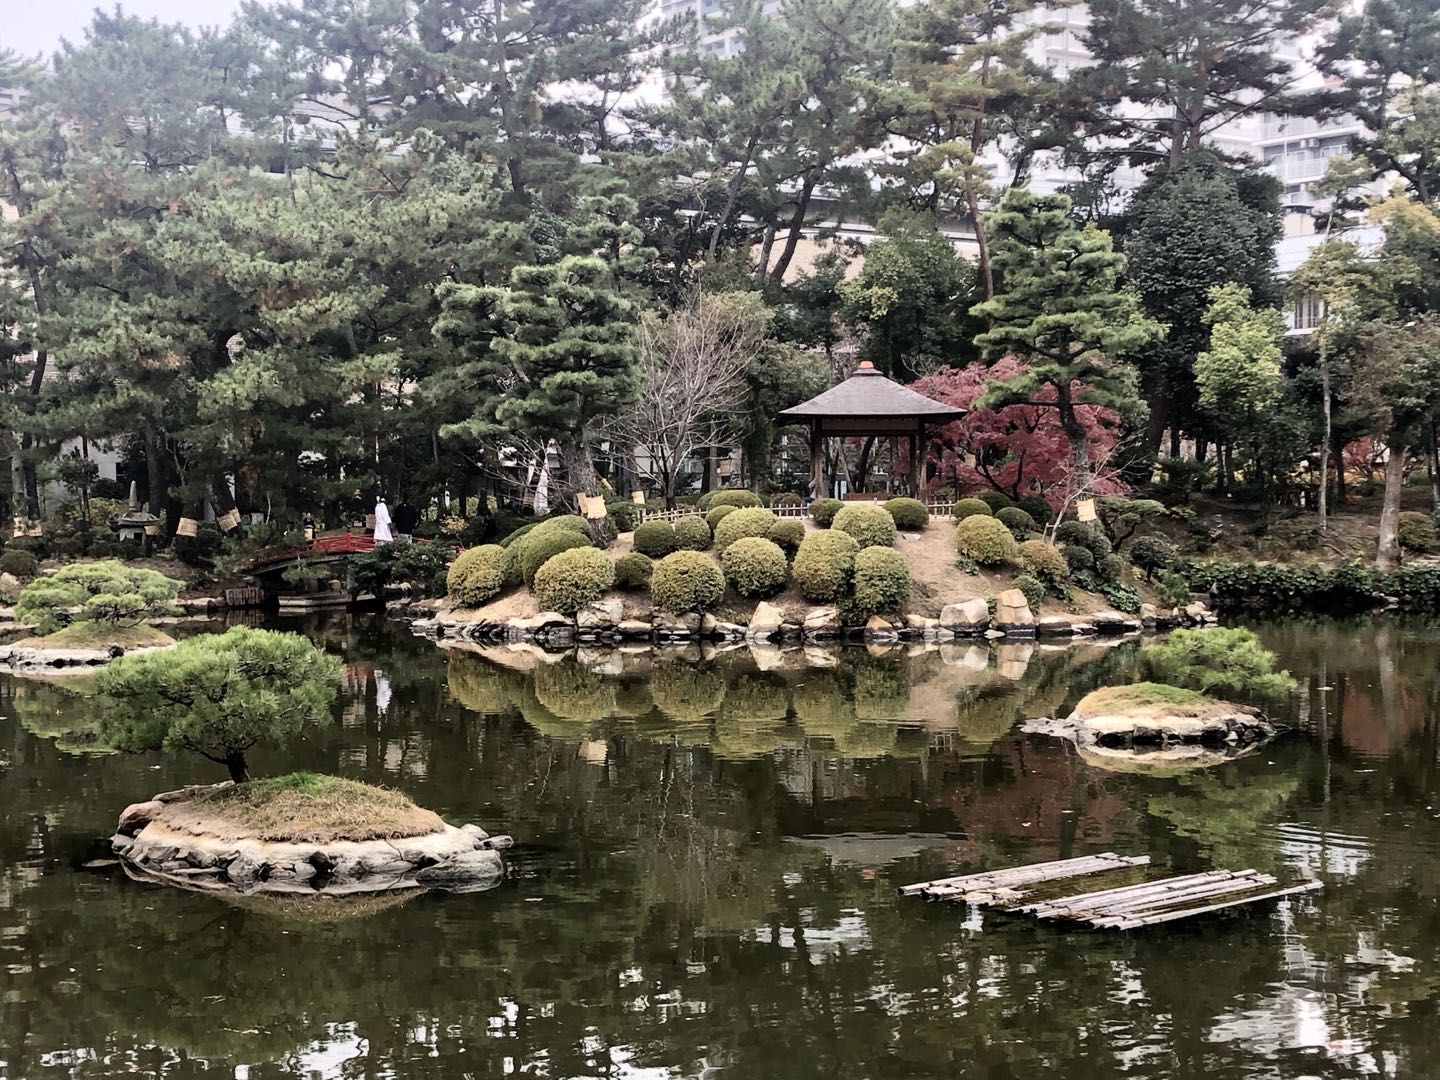 逛缩景园,登纸鹤塔,探寻广岛市的过去,今天与未来